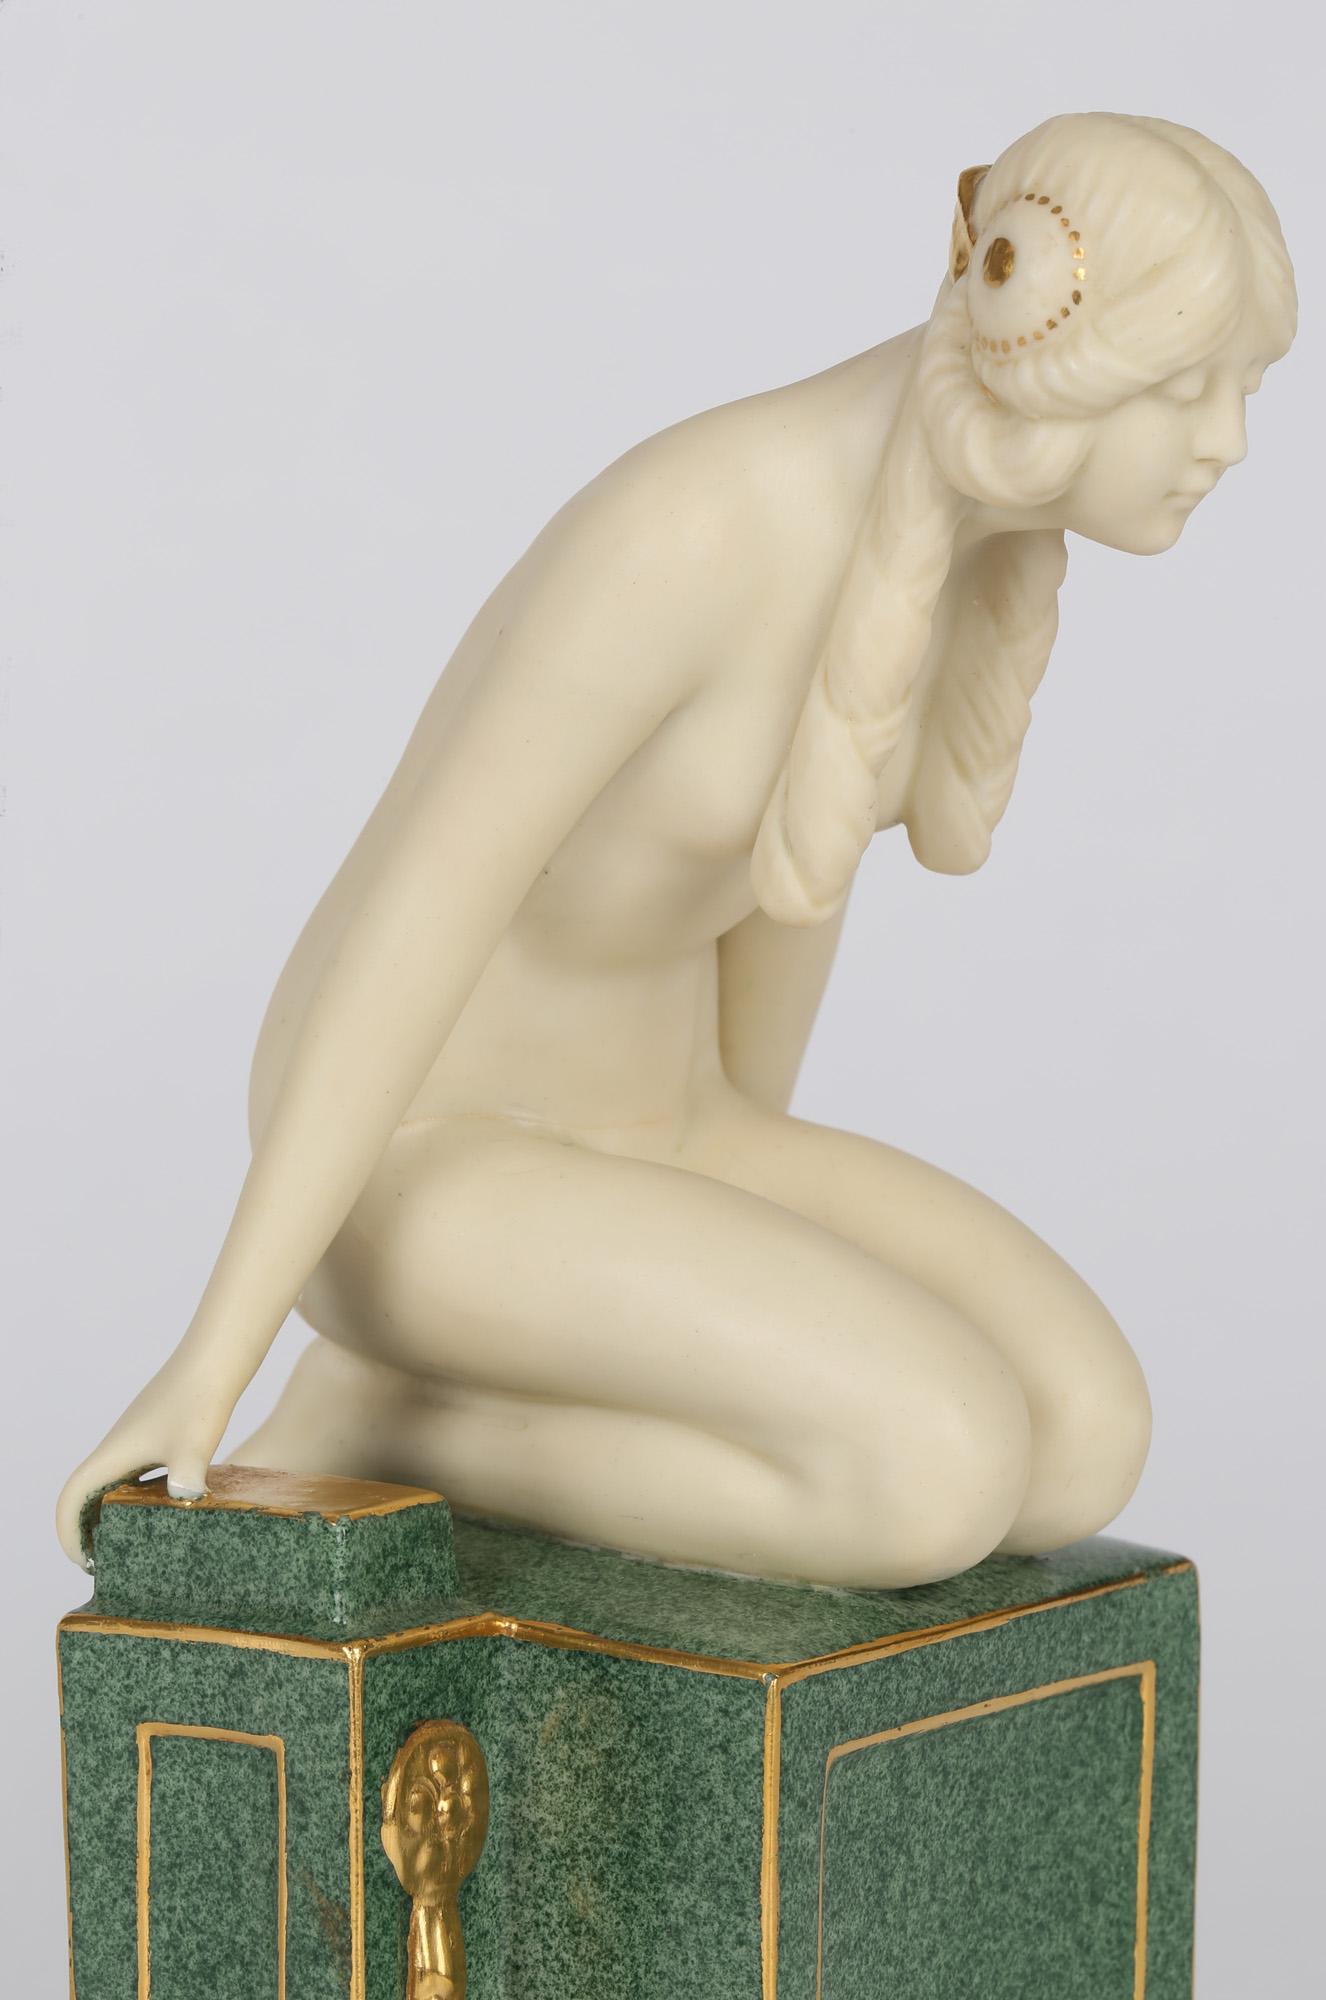 Frederick Gertner Royal Worcester Art Deco Porcelain Sculptural Naiad Figurine 4